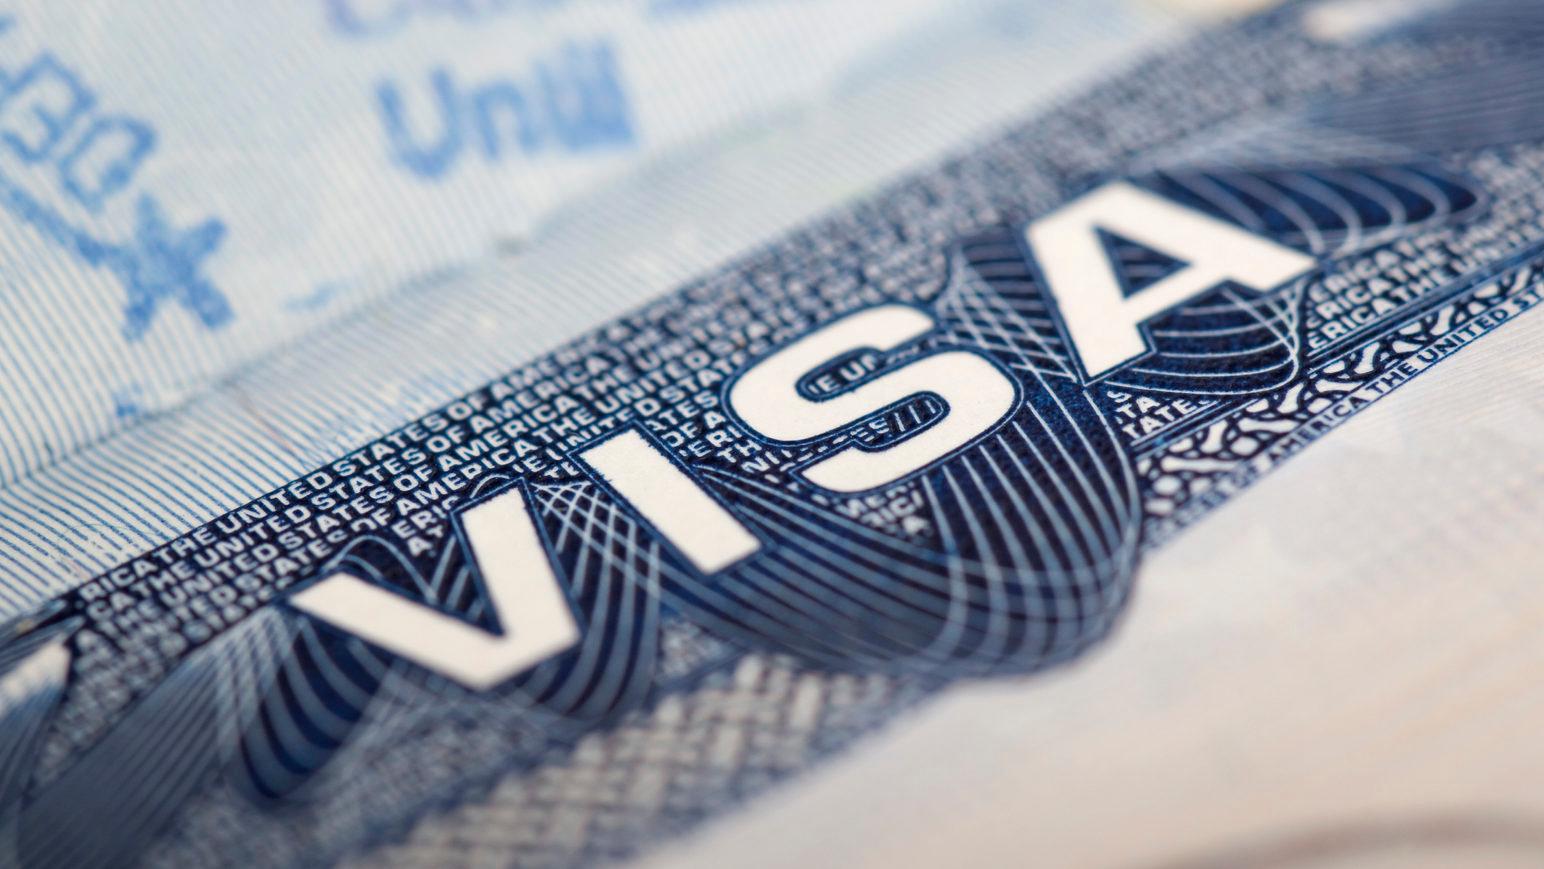 Cancelamento das entrevistas rotineiras de vistos e serviços para